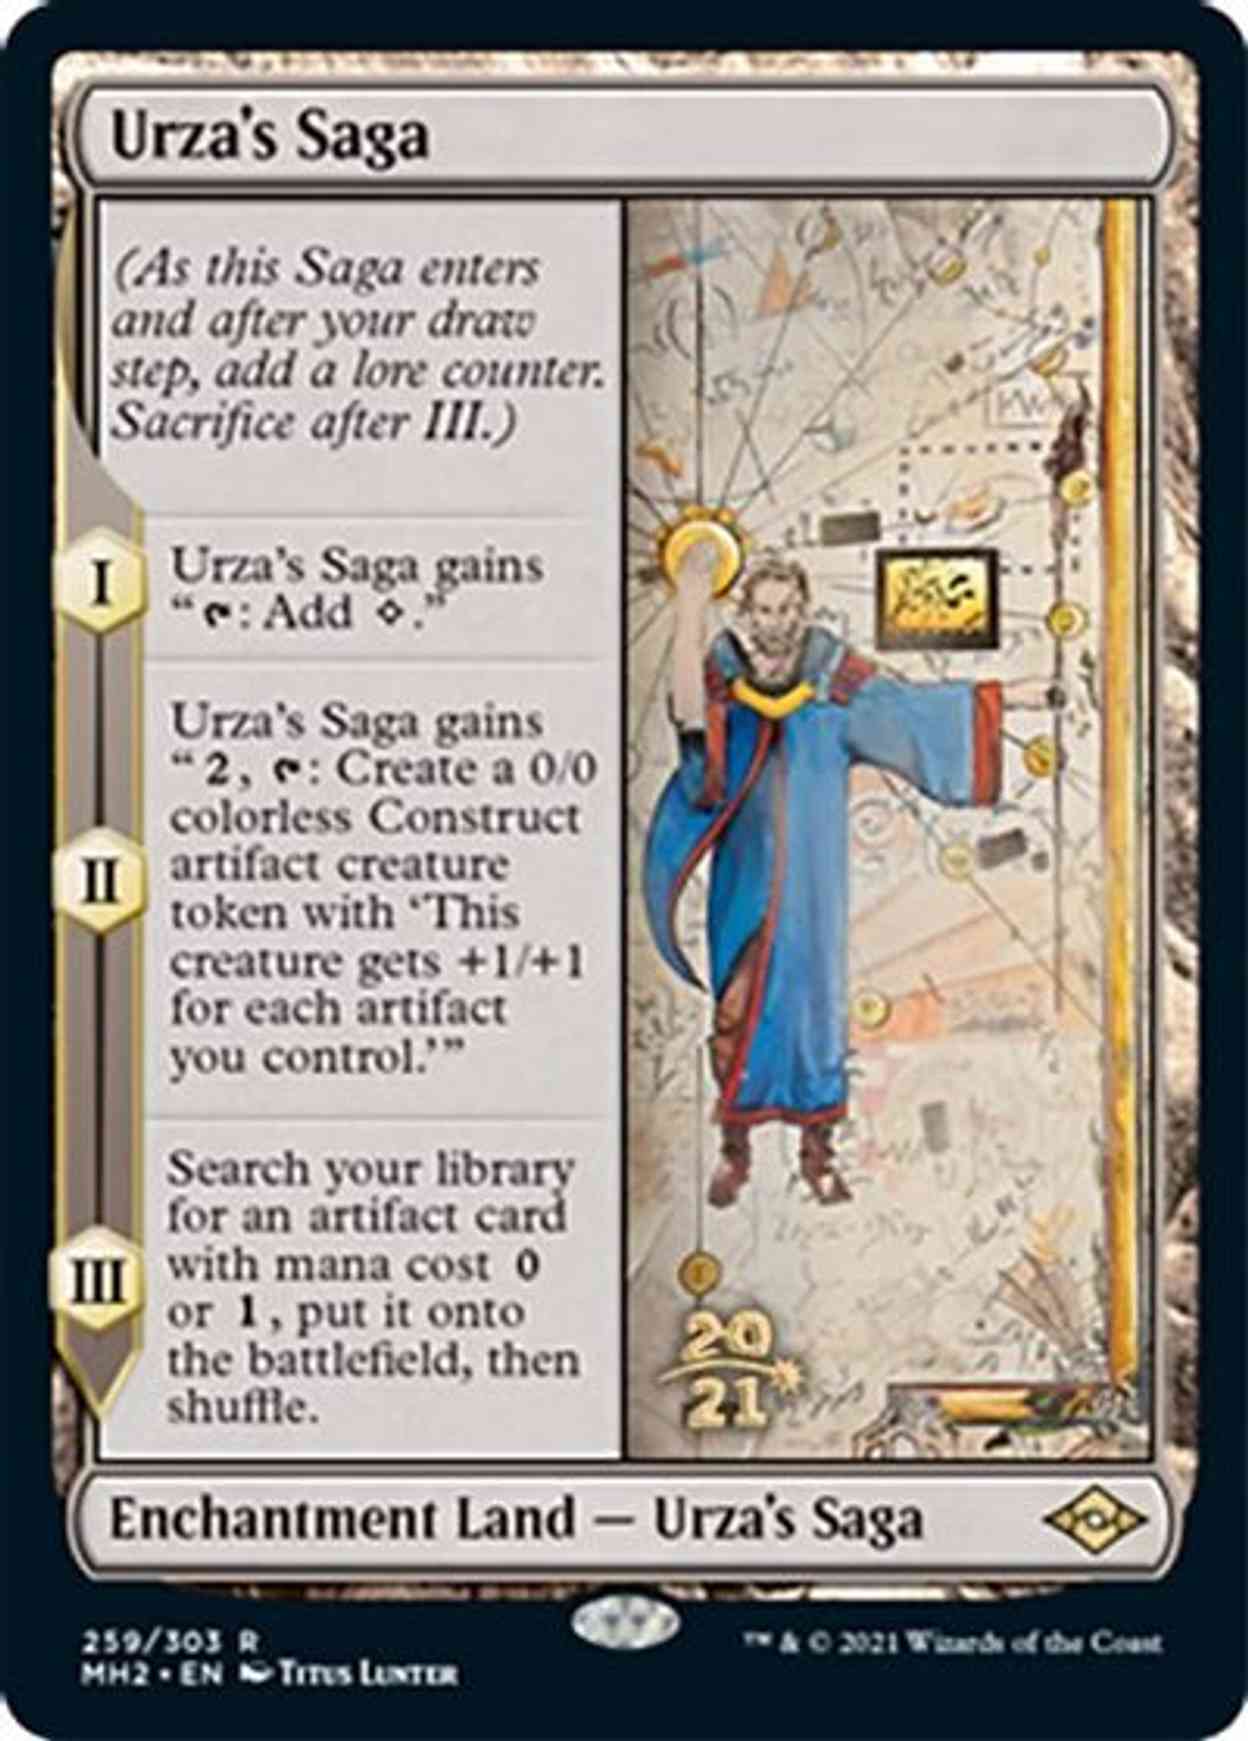 Urza's Saga magic card front